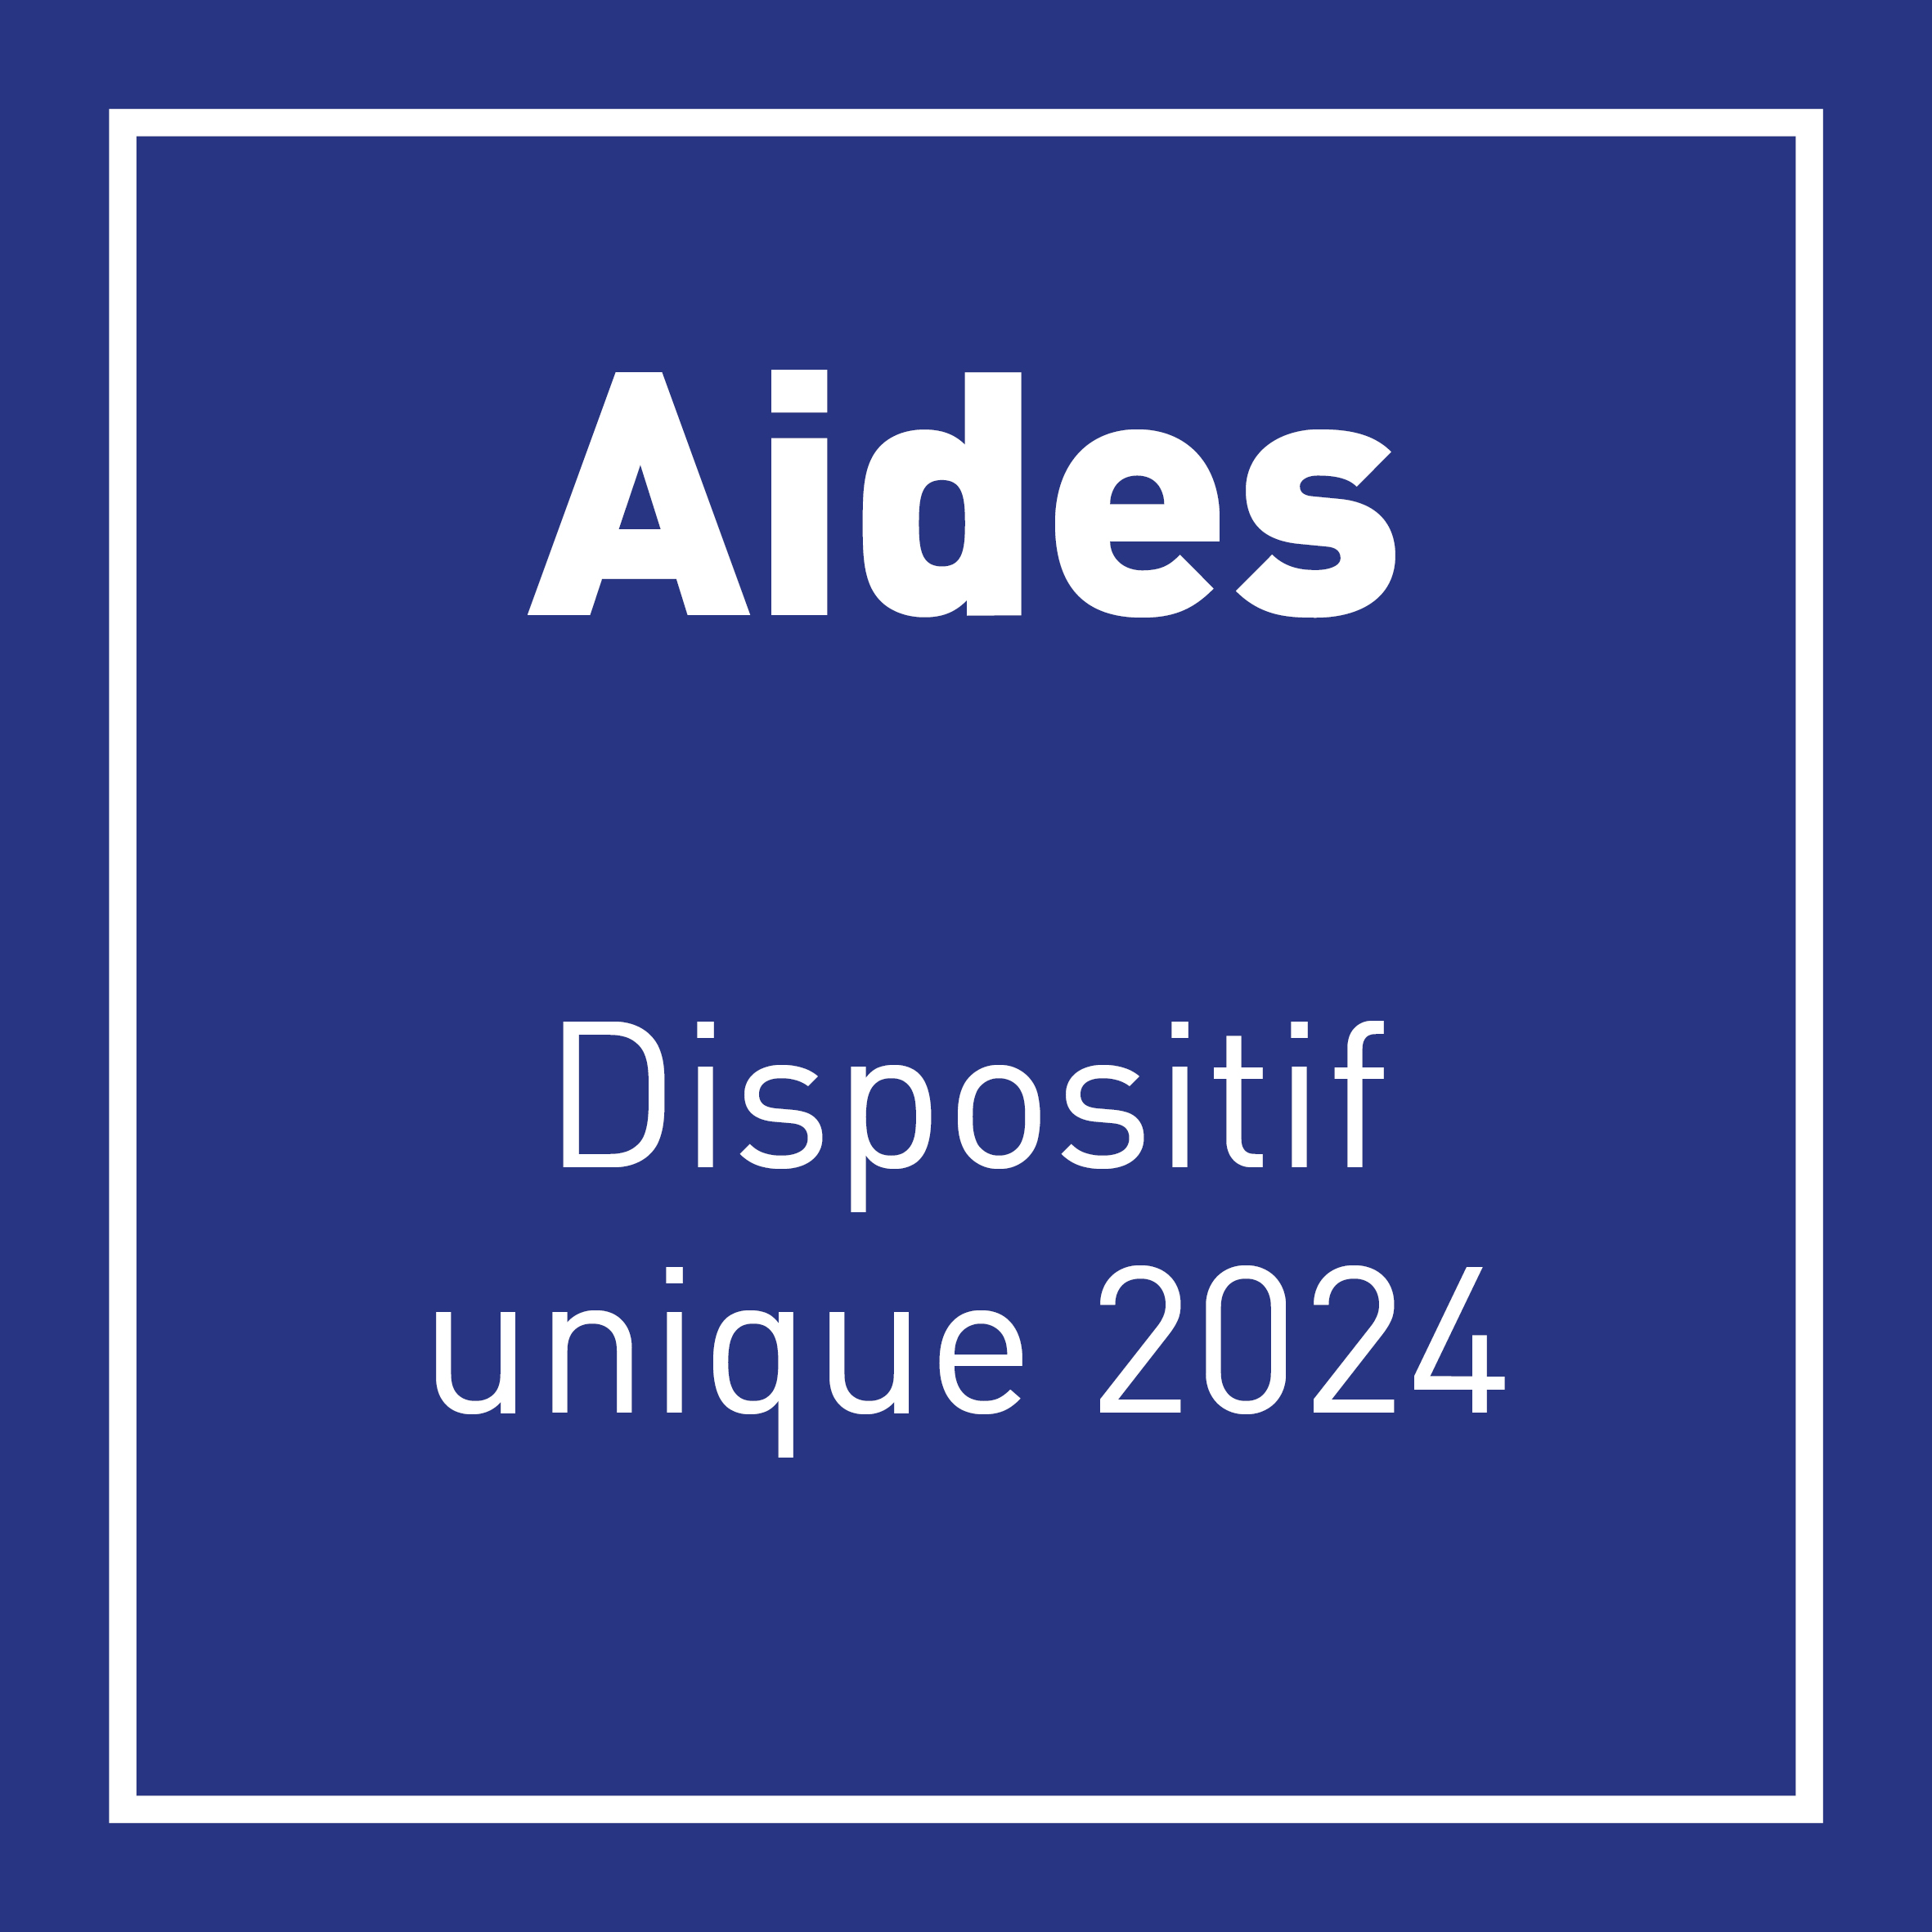 Le Dispositif Unique 2024 (DU) toutes filières : Dispositif d’aides aux investissements de la Région Occitanie